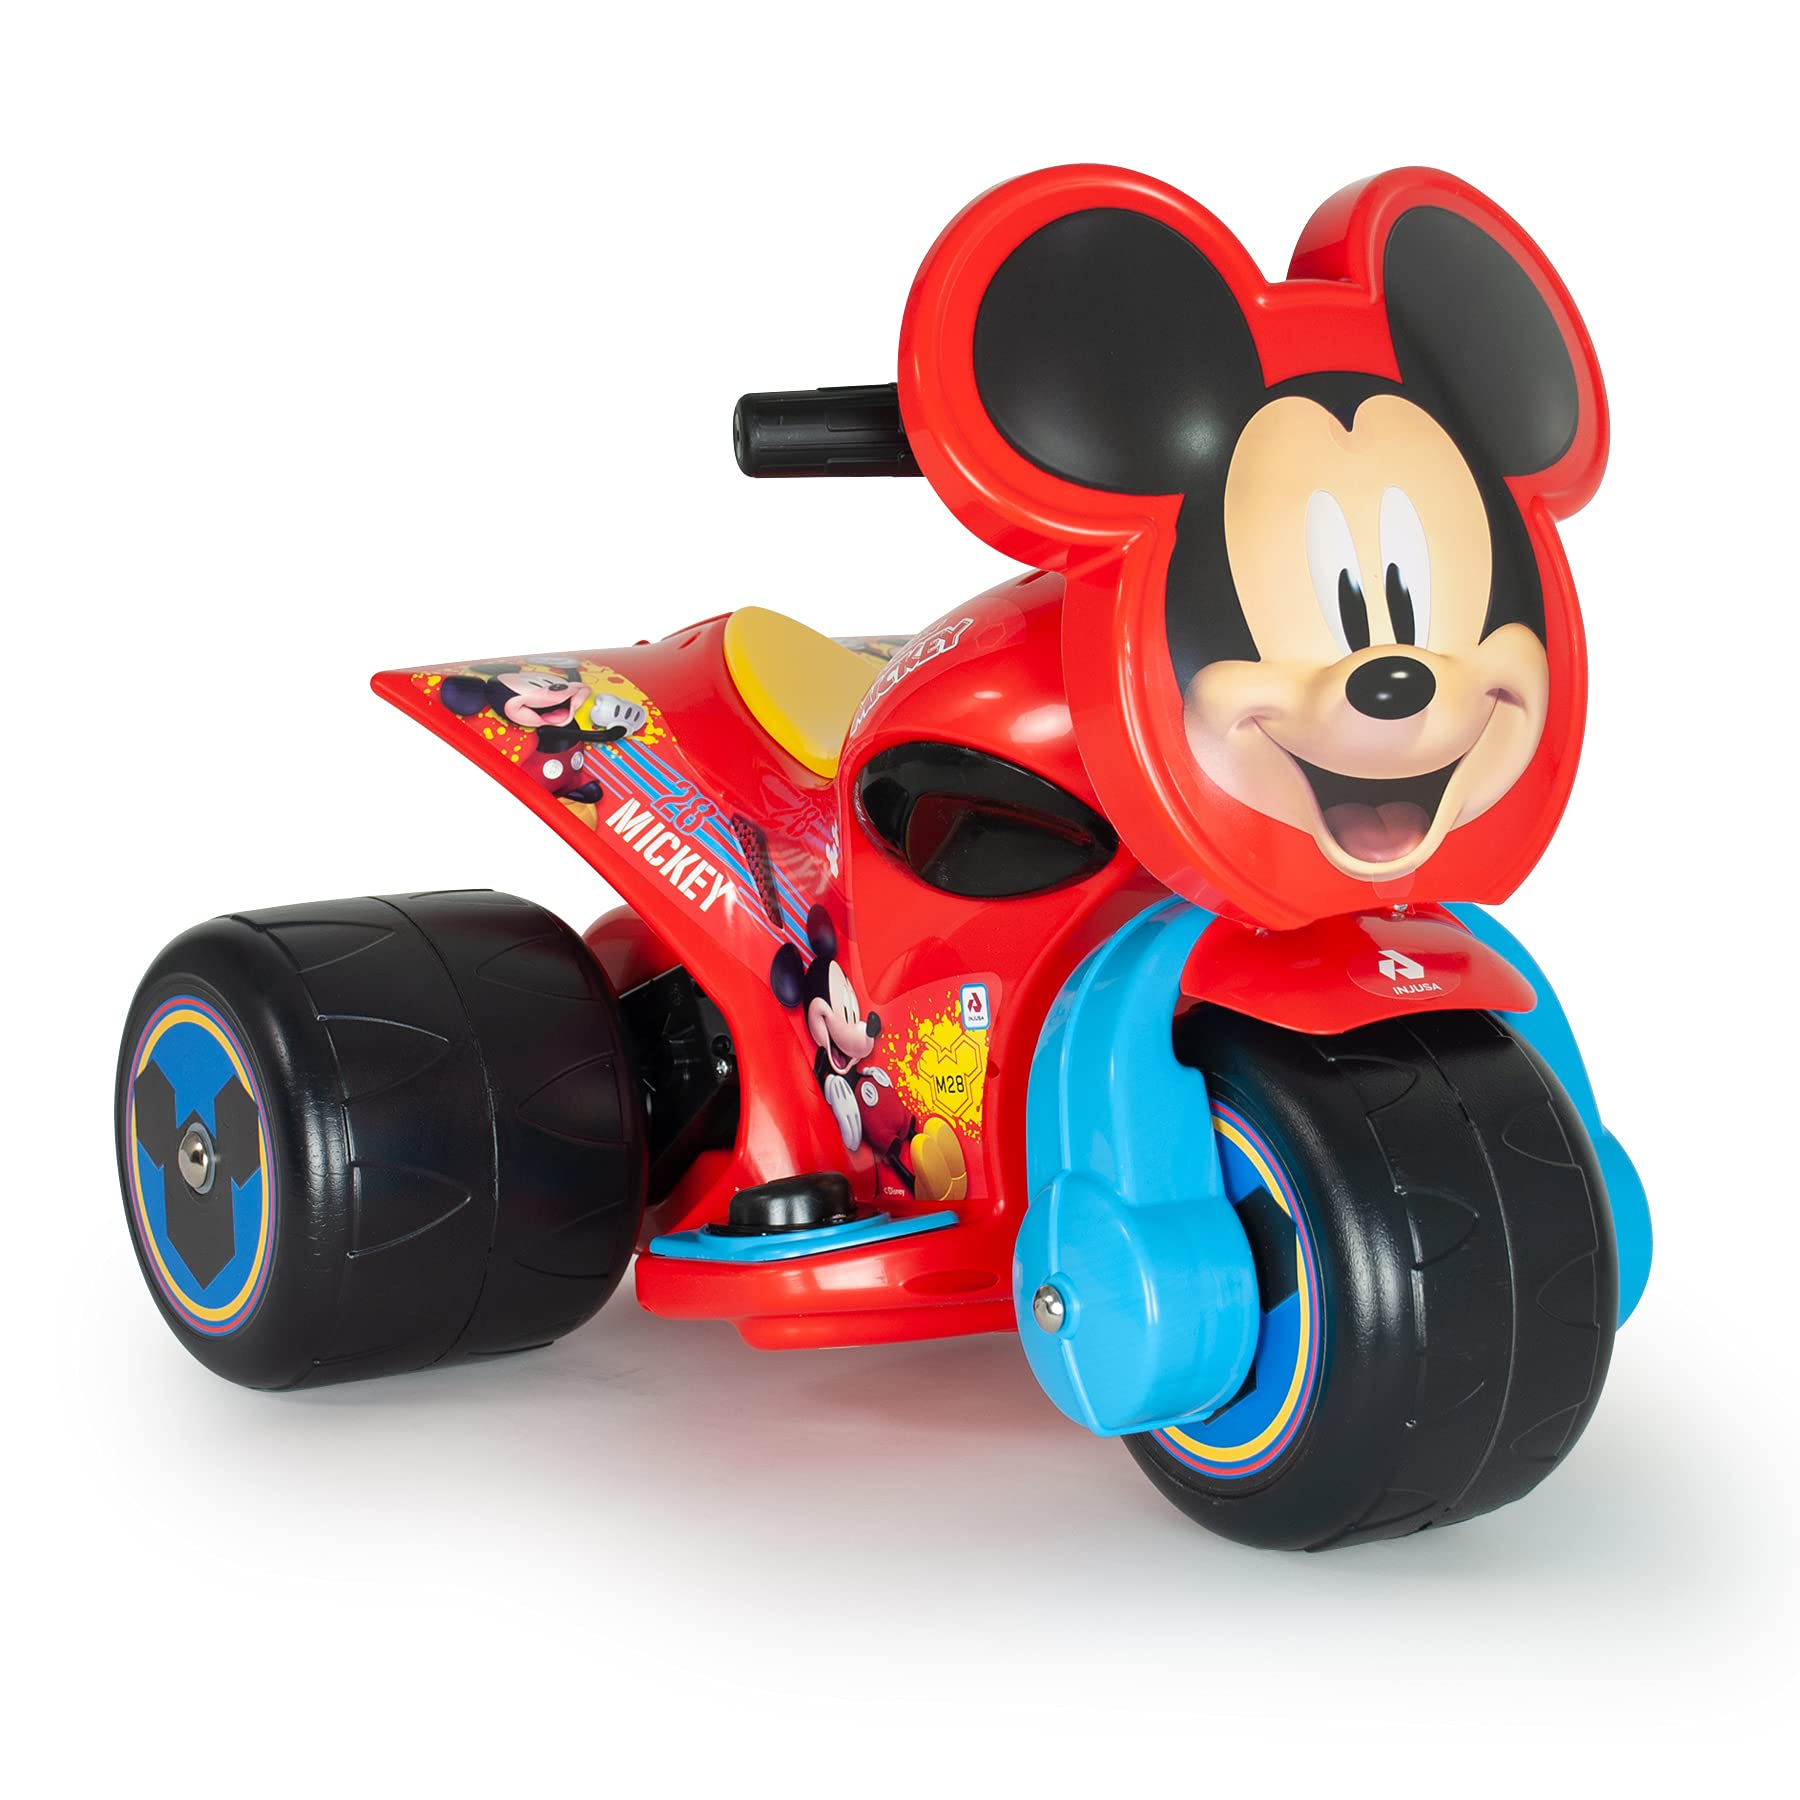 INJUSA - Elektromotorrad Mickey Mouse Samurai, 6V Batterie, für Kinder von 1 bis 3 Jahren, mit Gaspedal und 3 Breiten Kunststoffrädern, Höchstgeschwindigkeit 3 Km/h, Farbe Rot